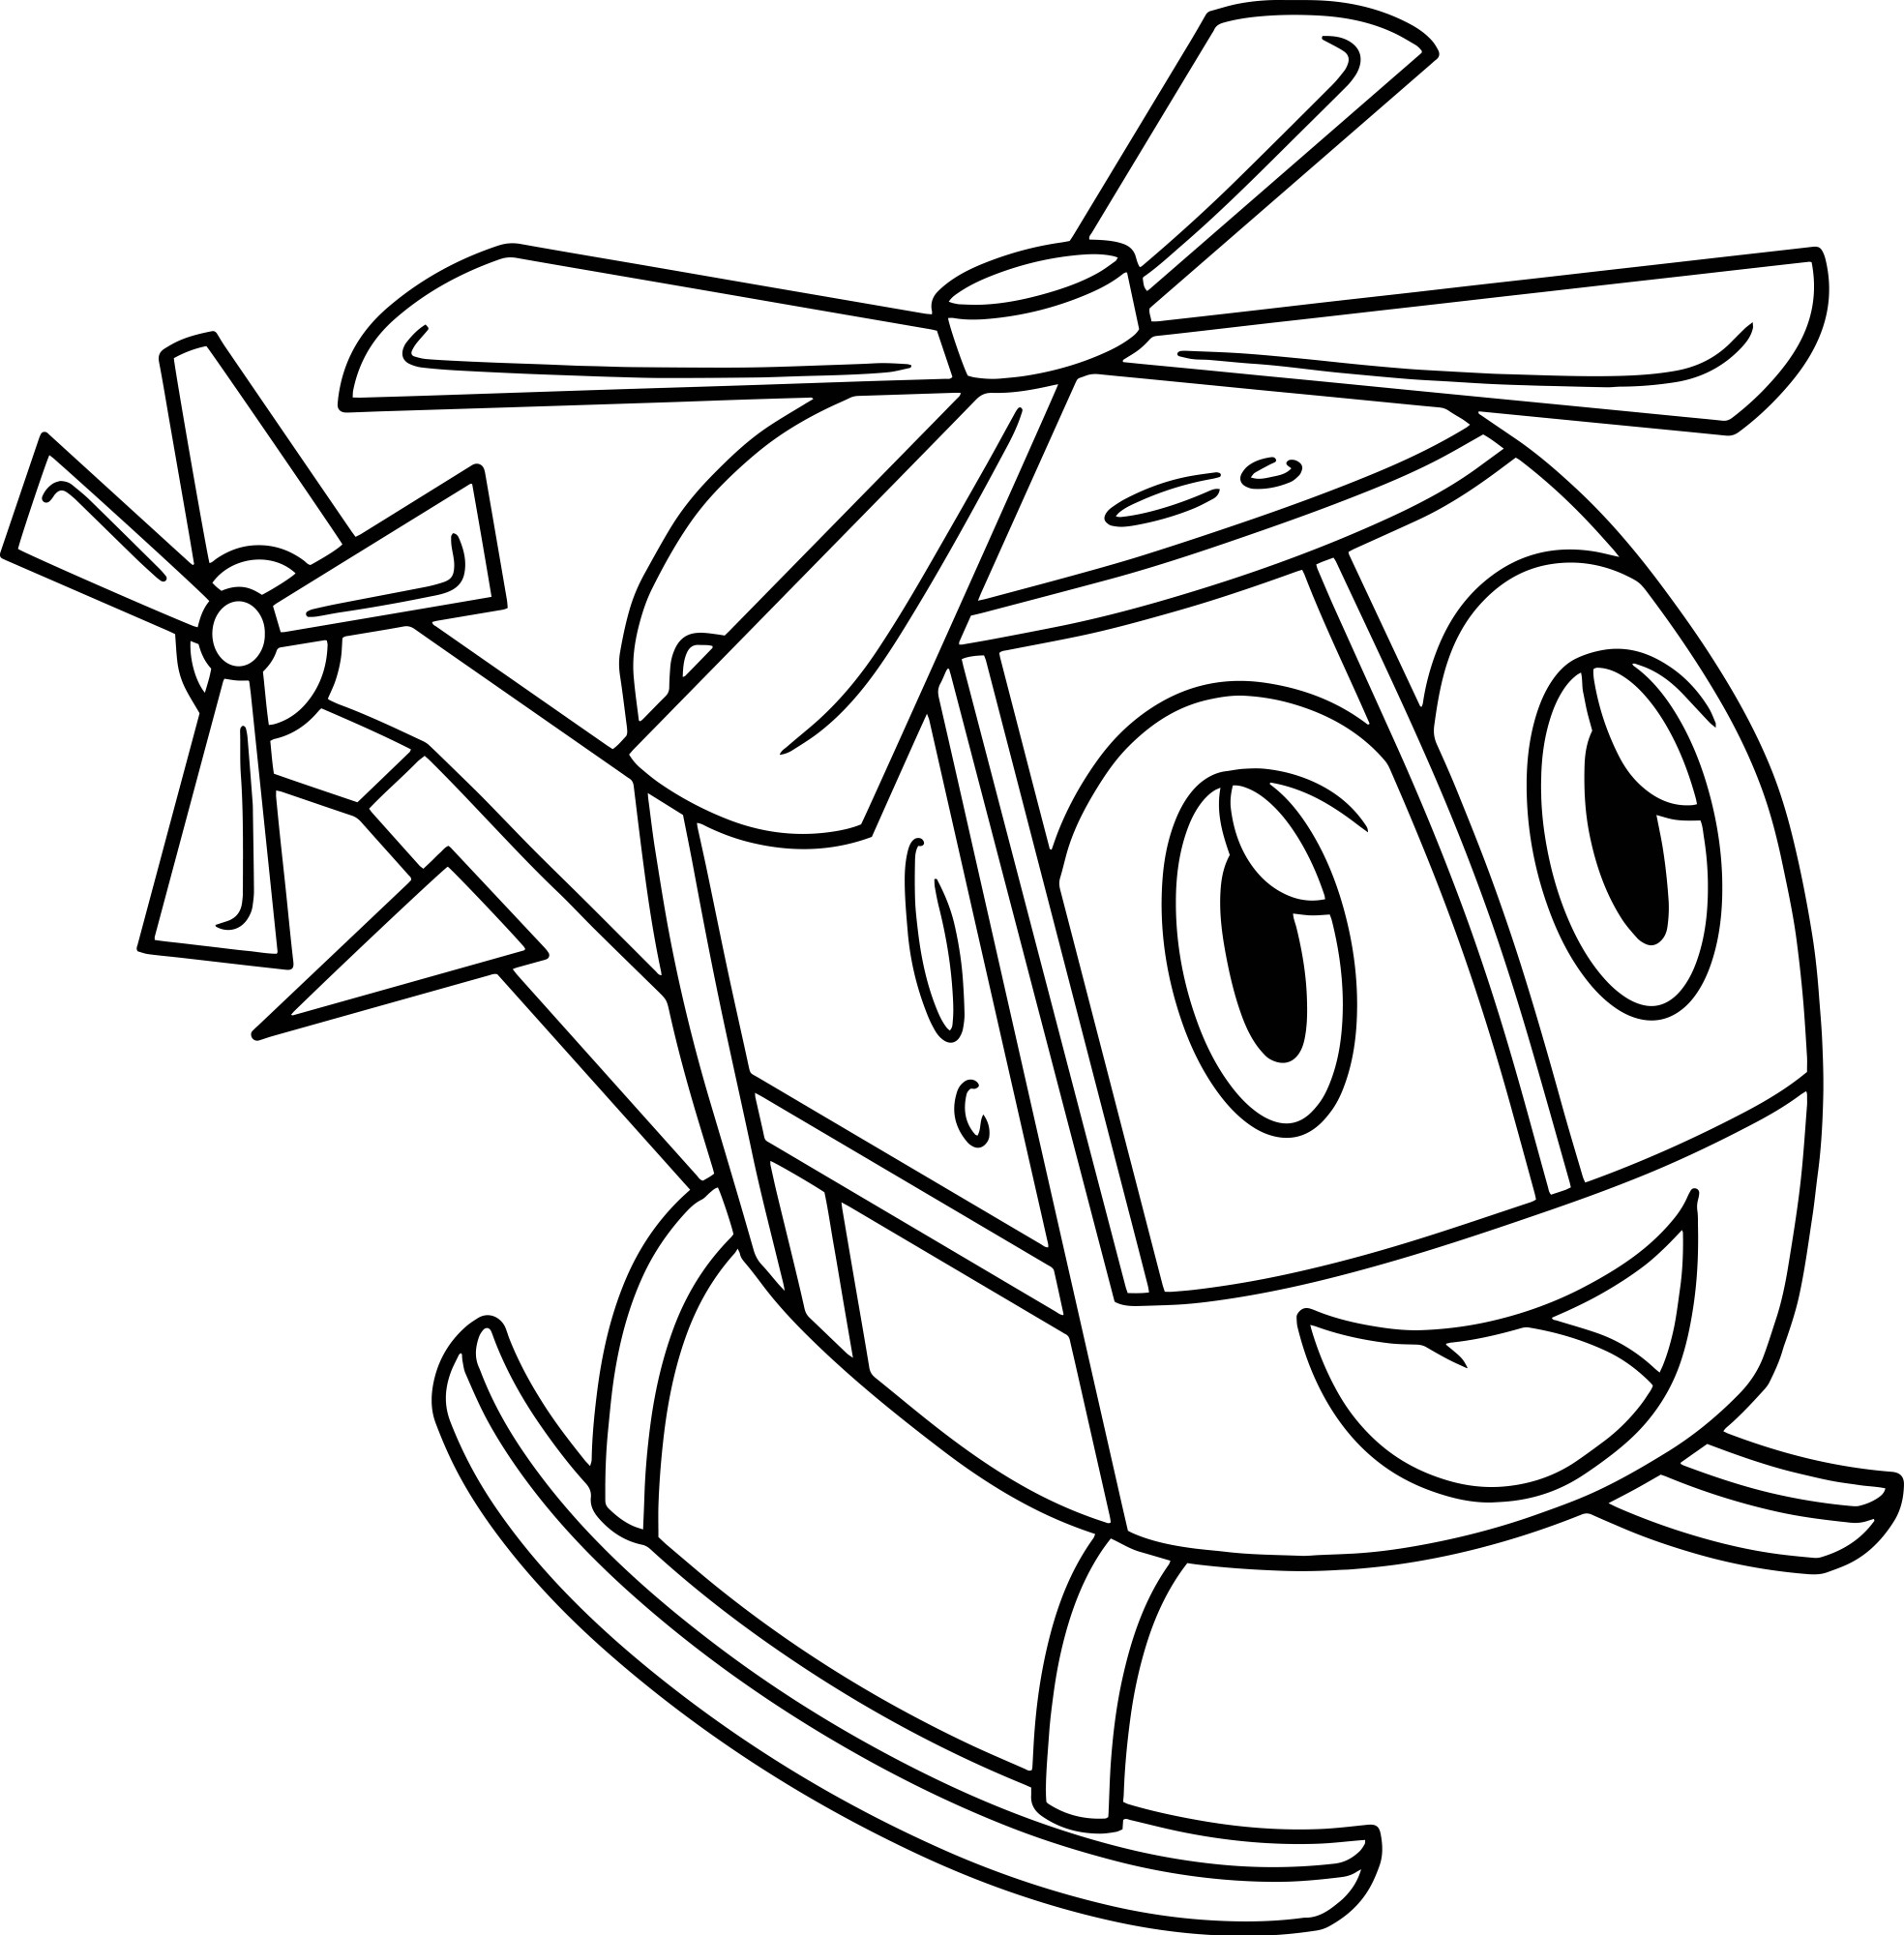 Раскраска для детей: маленький вертолет с лицом